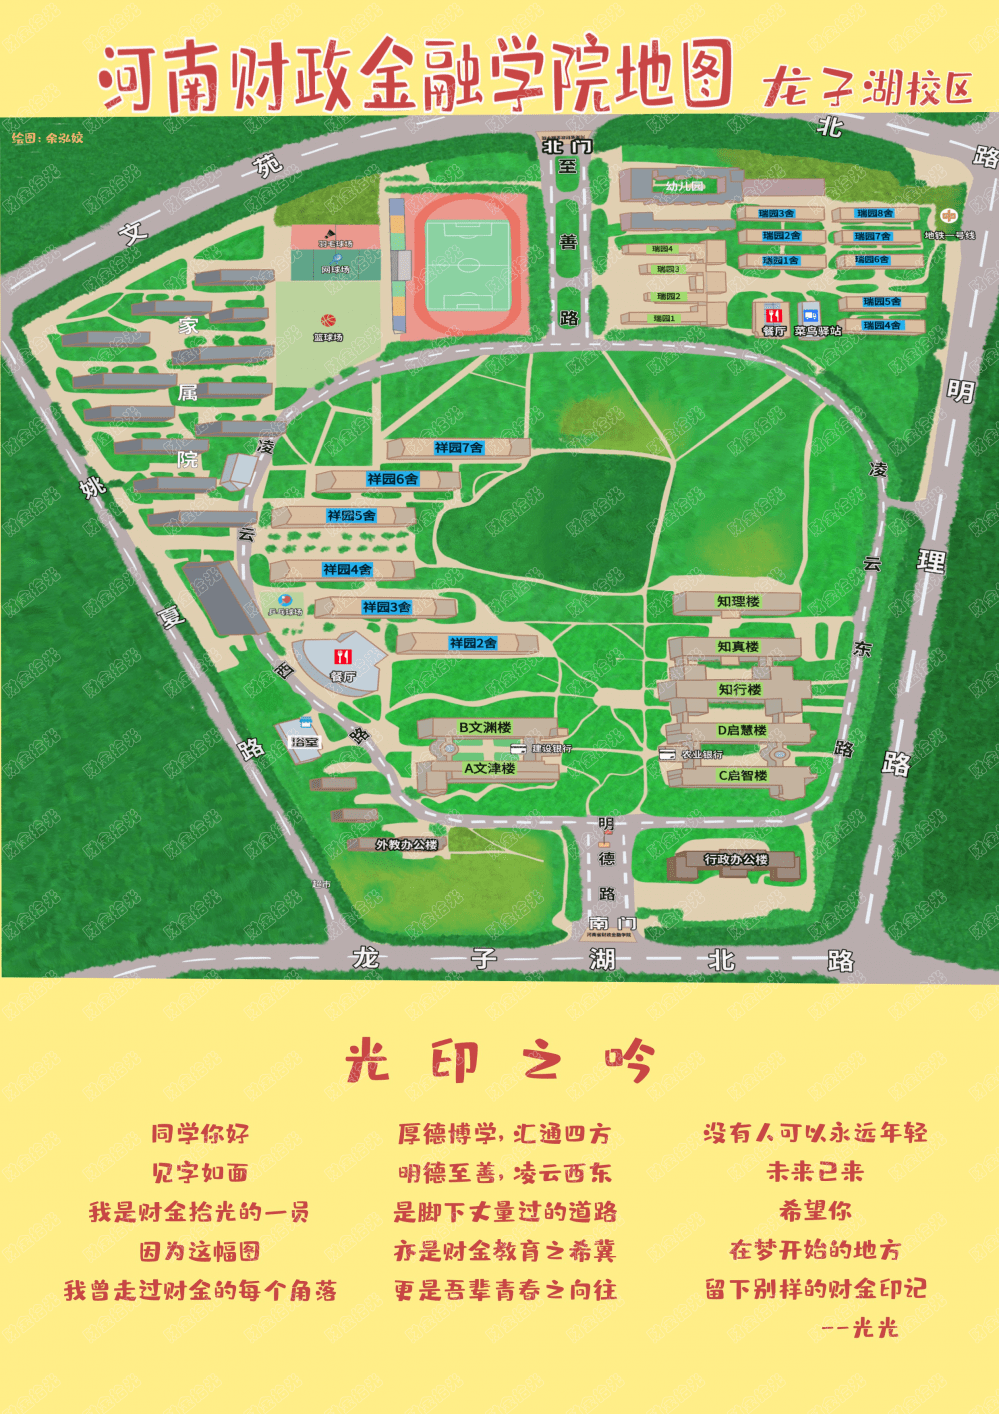 郑州师范学院郑师自制小地图清晰明了,简单易懂,一张不大的图画纸上